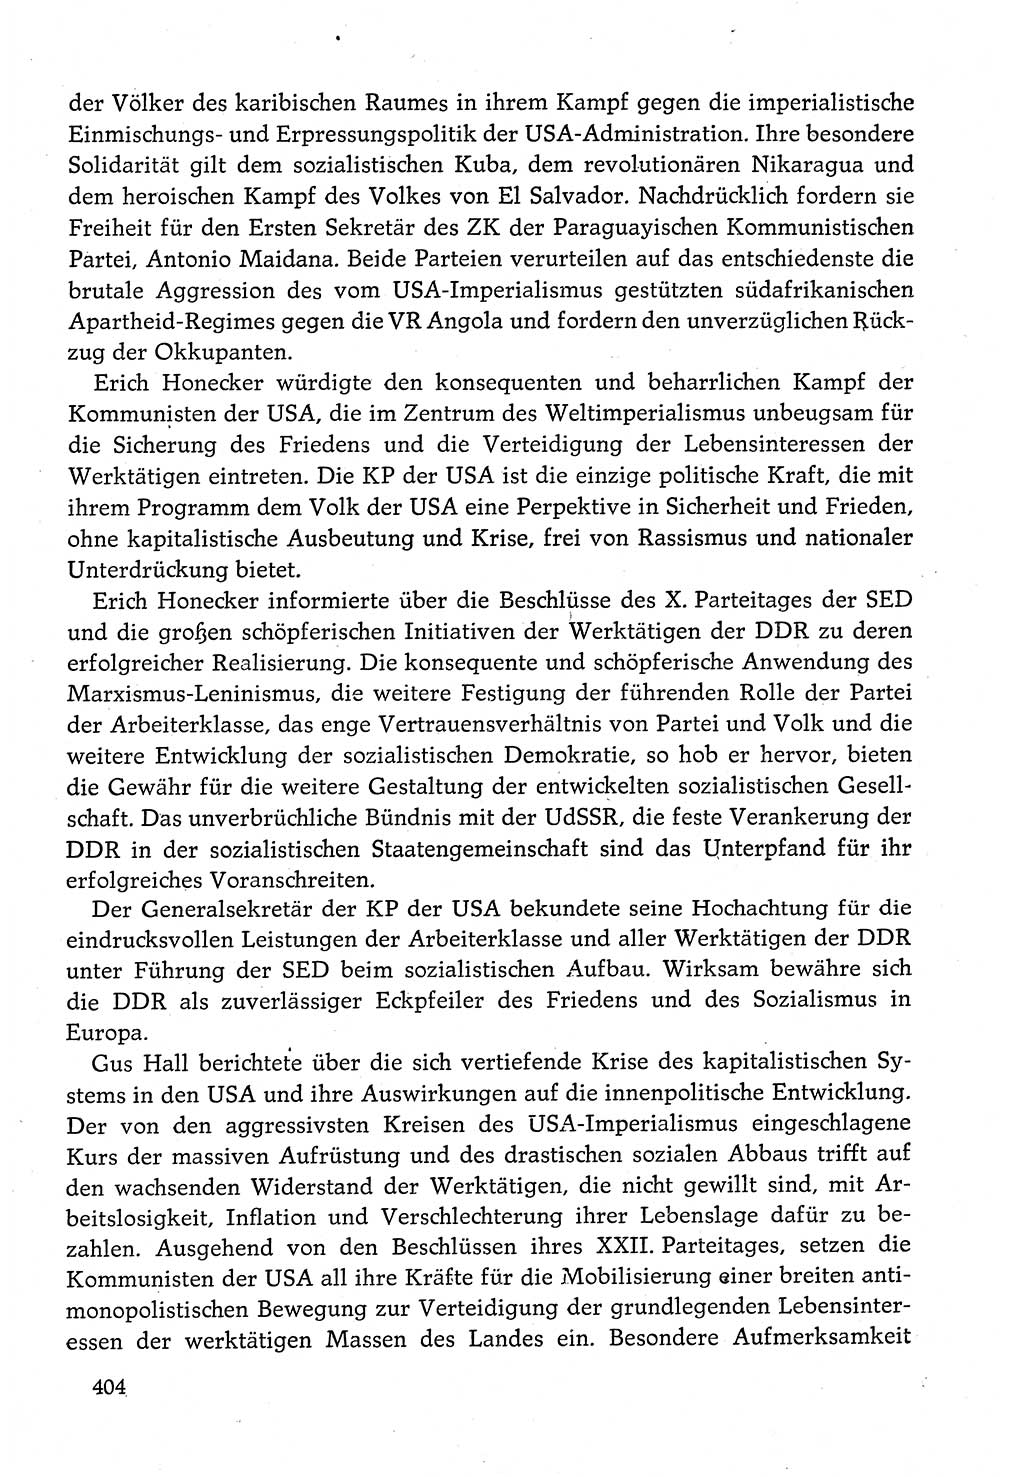 Dokumente der Sozialistischen Einheitspartei Deutschlands (SED) [Deutsche Demokratische Republik (DDR)] 1980-1981, Seite 404 (Dok. SED DDR 1980-1981, S. 404)